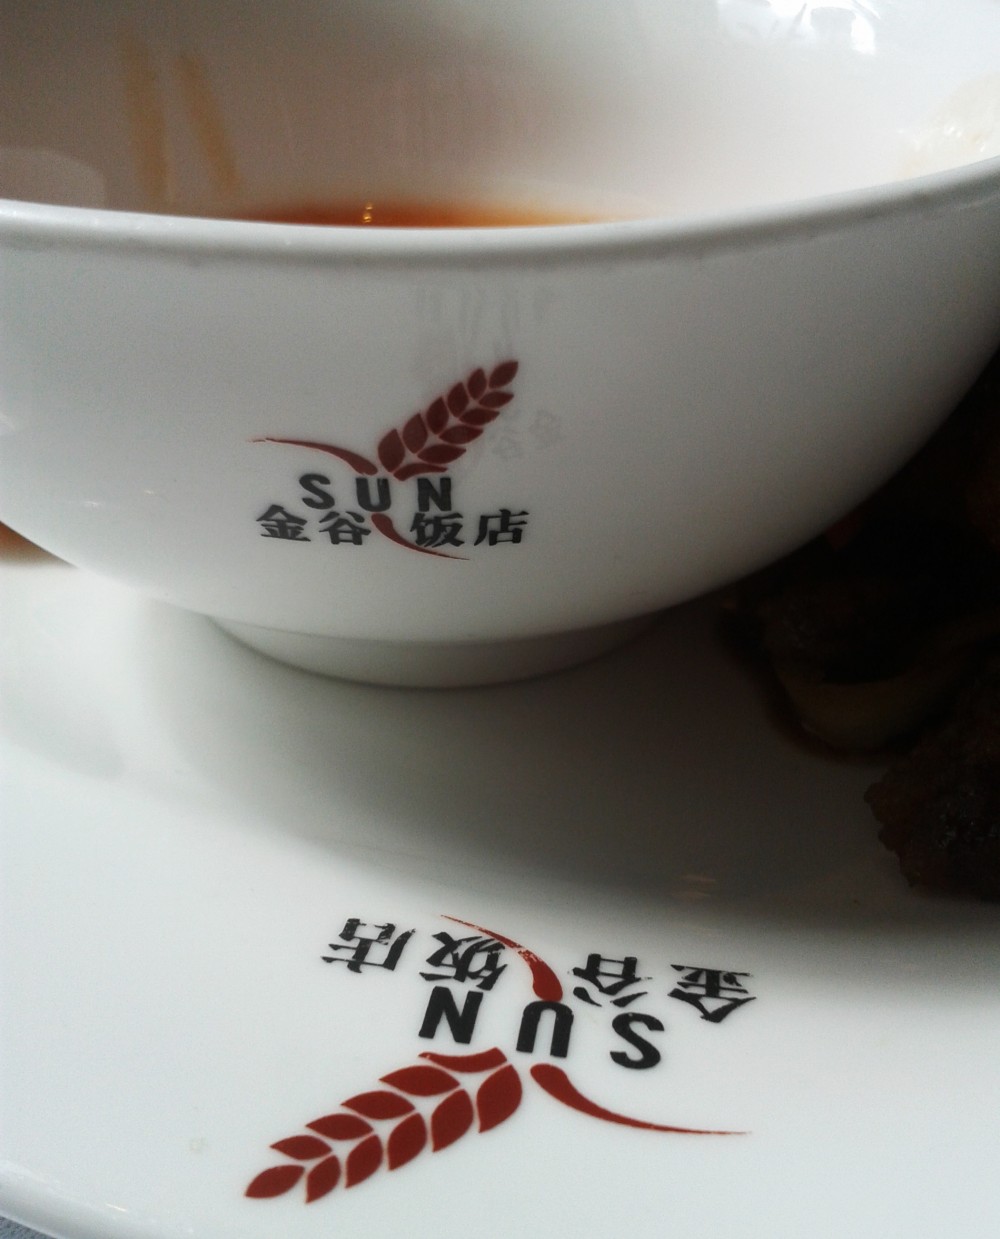 Stimmiges Geschirr - China-Restaurant Sun - Wien